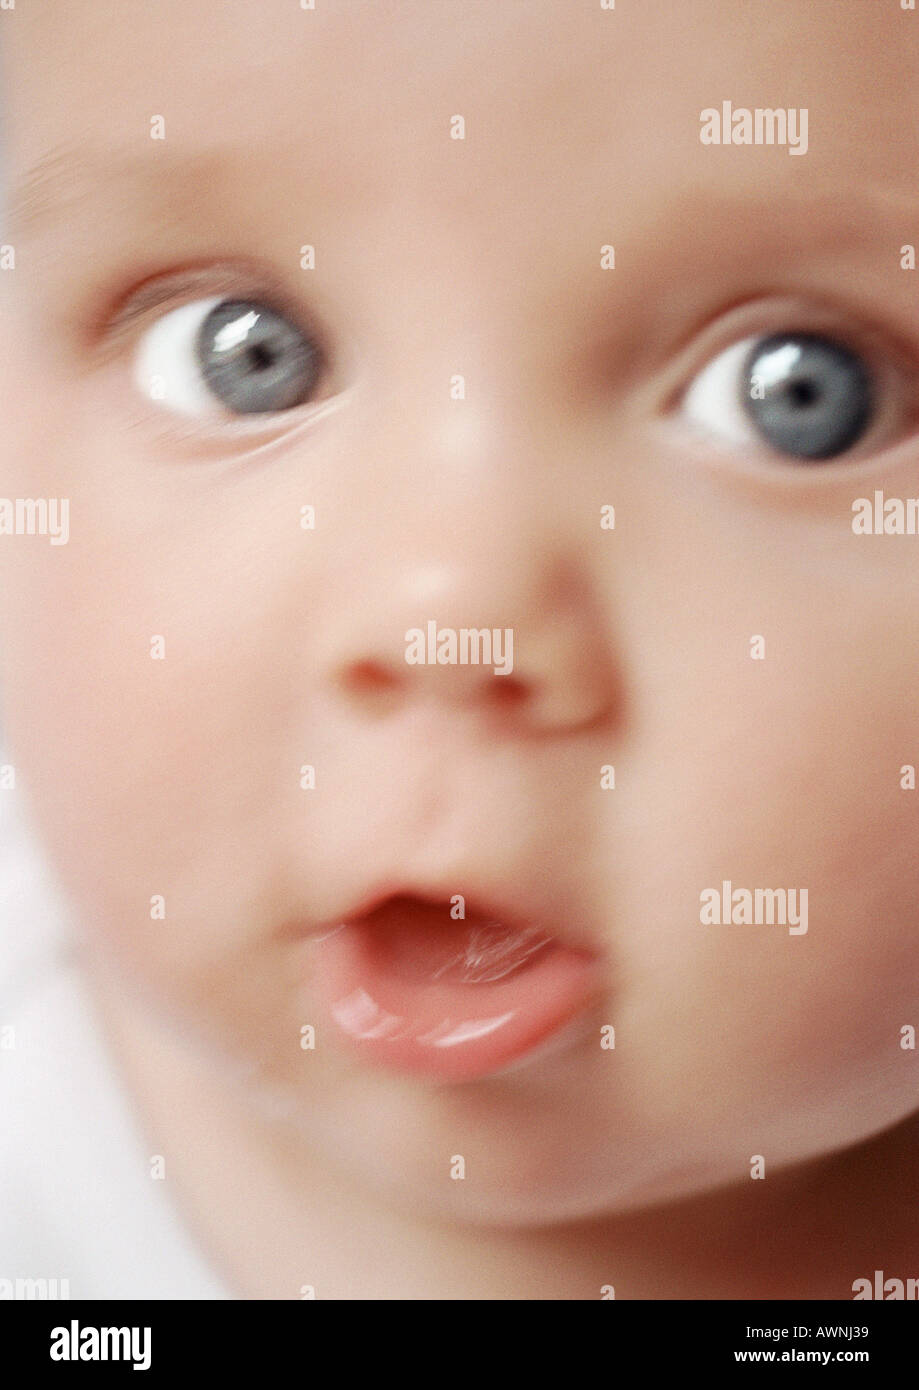 La cara del bebé, con la boca abierta, mirando a la cámara, cierre, borrosa  Fotografía de stock - Alamy